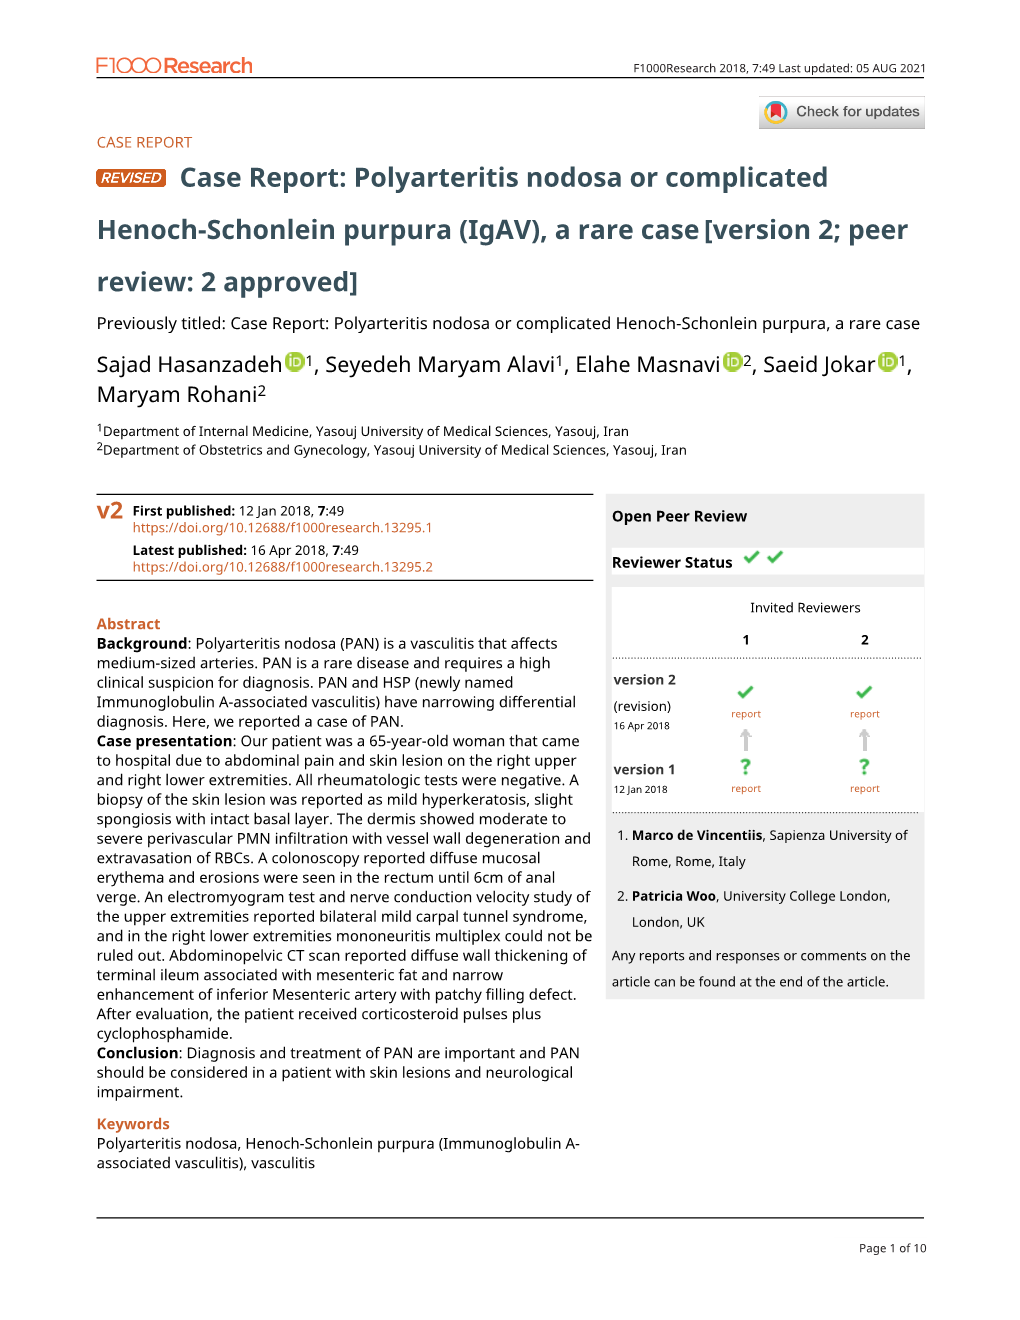 Polyarteritis Nodosa Or Complicated Henoch-Schonlein Purpura, a Rare Case